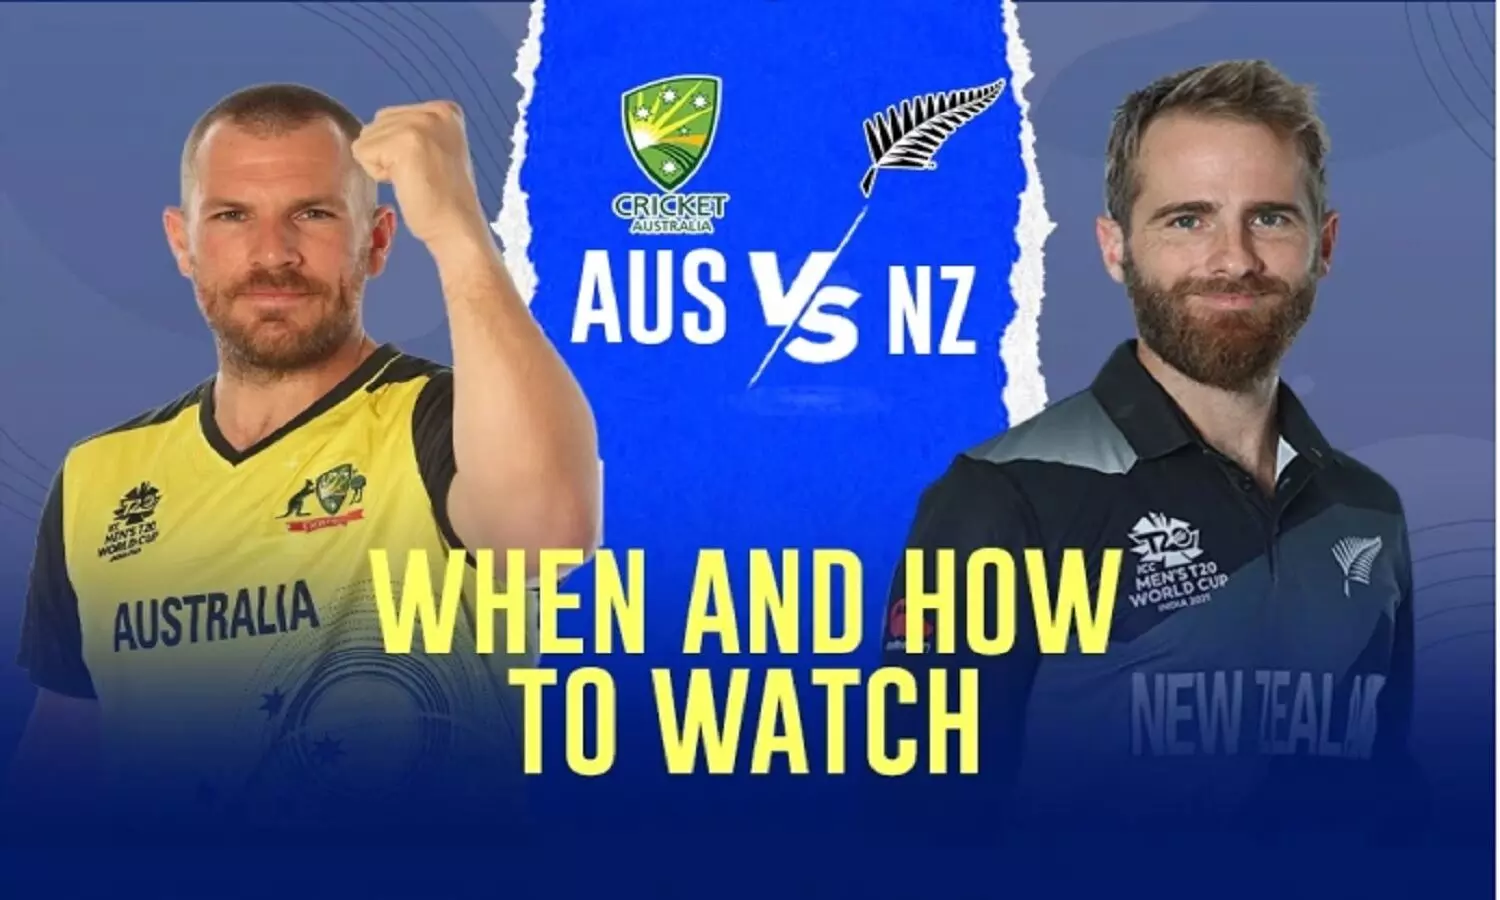 Australia Vs New Zealand Playing 11: T20 WC 2022 का 13वां मैच ऑस्ट्रेलिया Vs न्यू ज़ीलैंड, देखें प्लेइंग 11